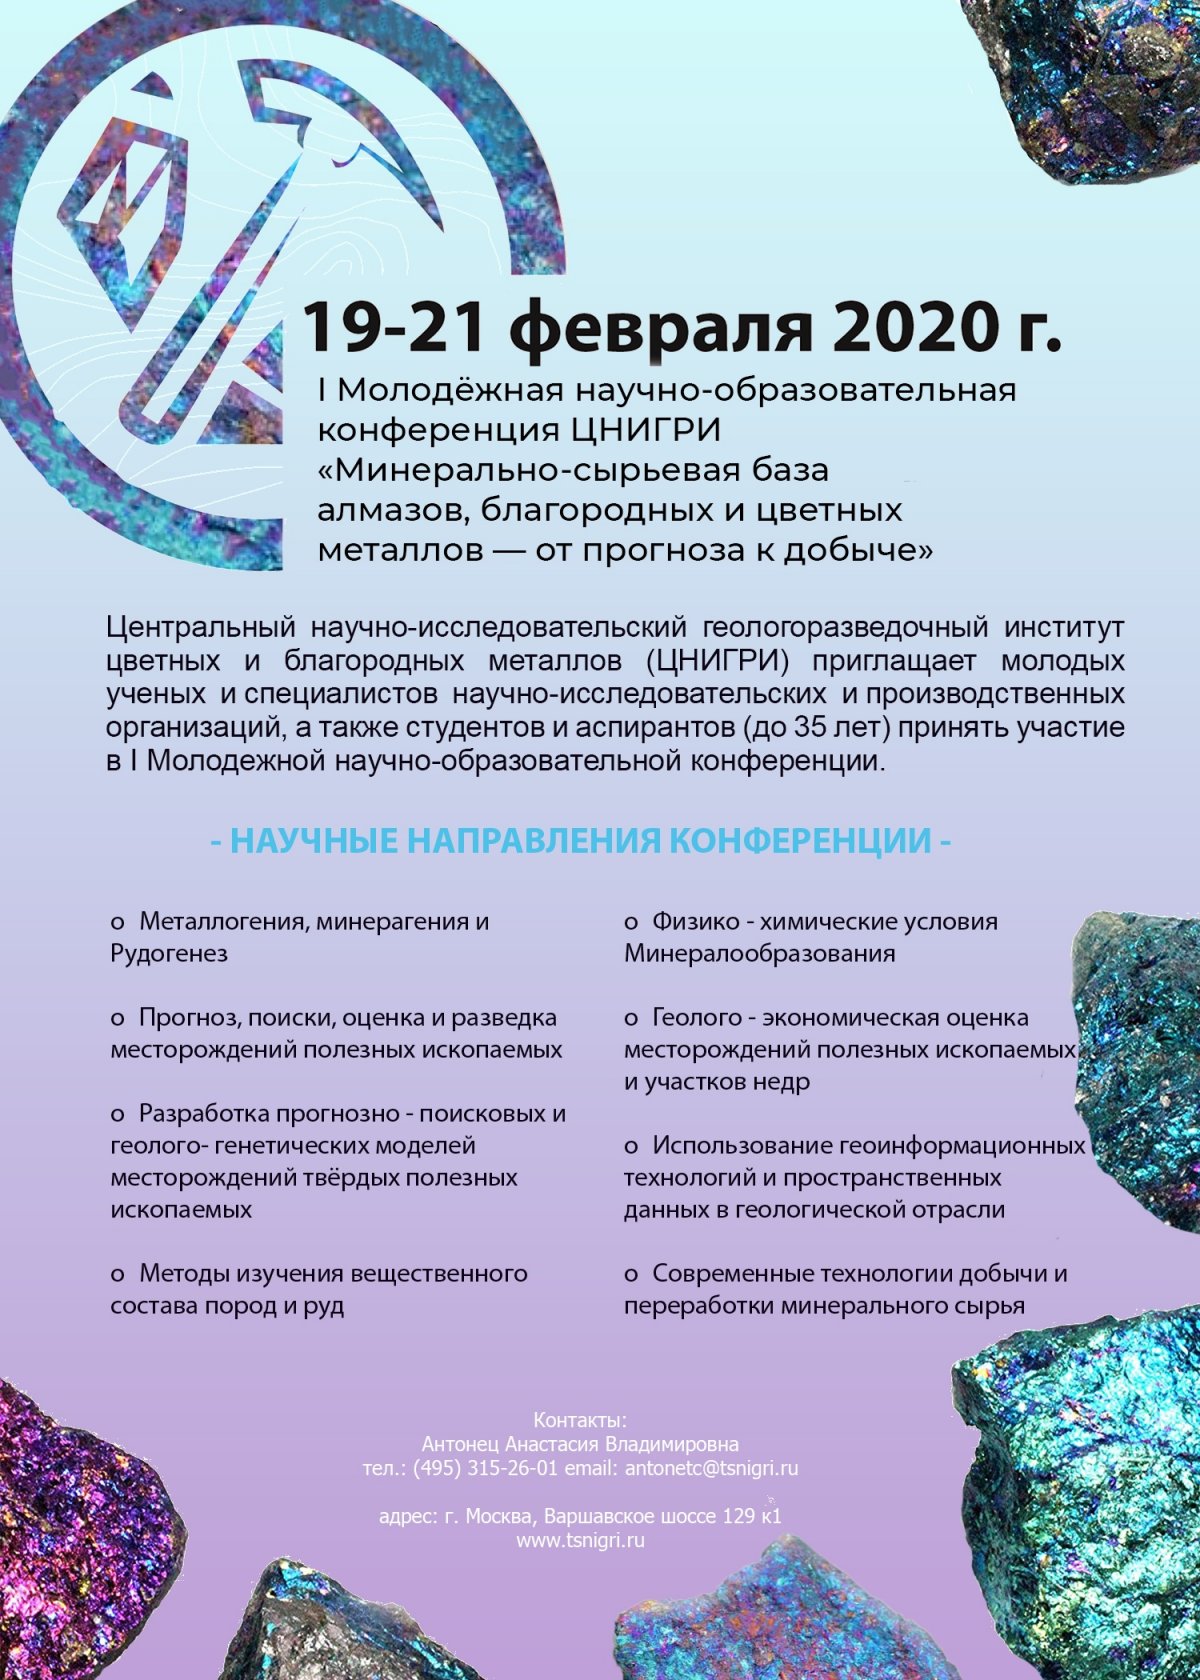 19-21 февраля 2020 г. пройдет первая молодёжная научно-образовательная геологическая конференция ЦНИГРИ: «МСБ алмазов, благородных и цветных металлов — от прогноза к добыче»